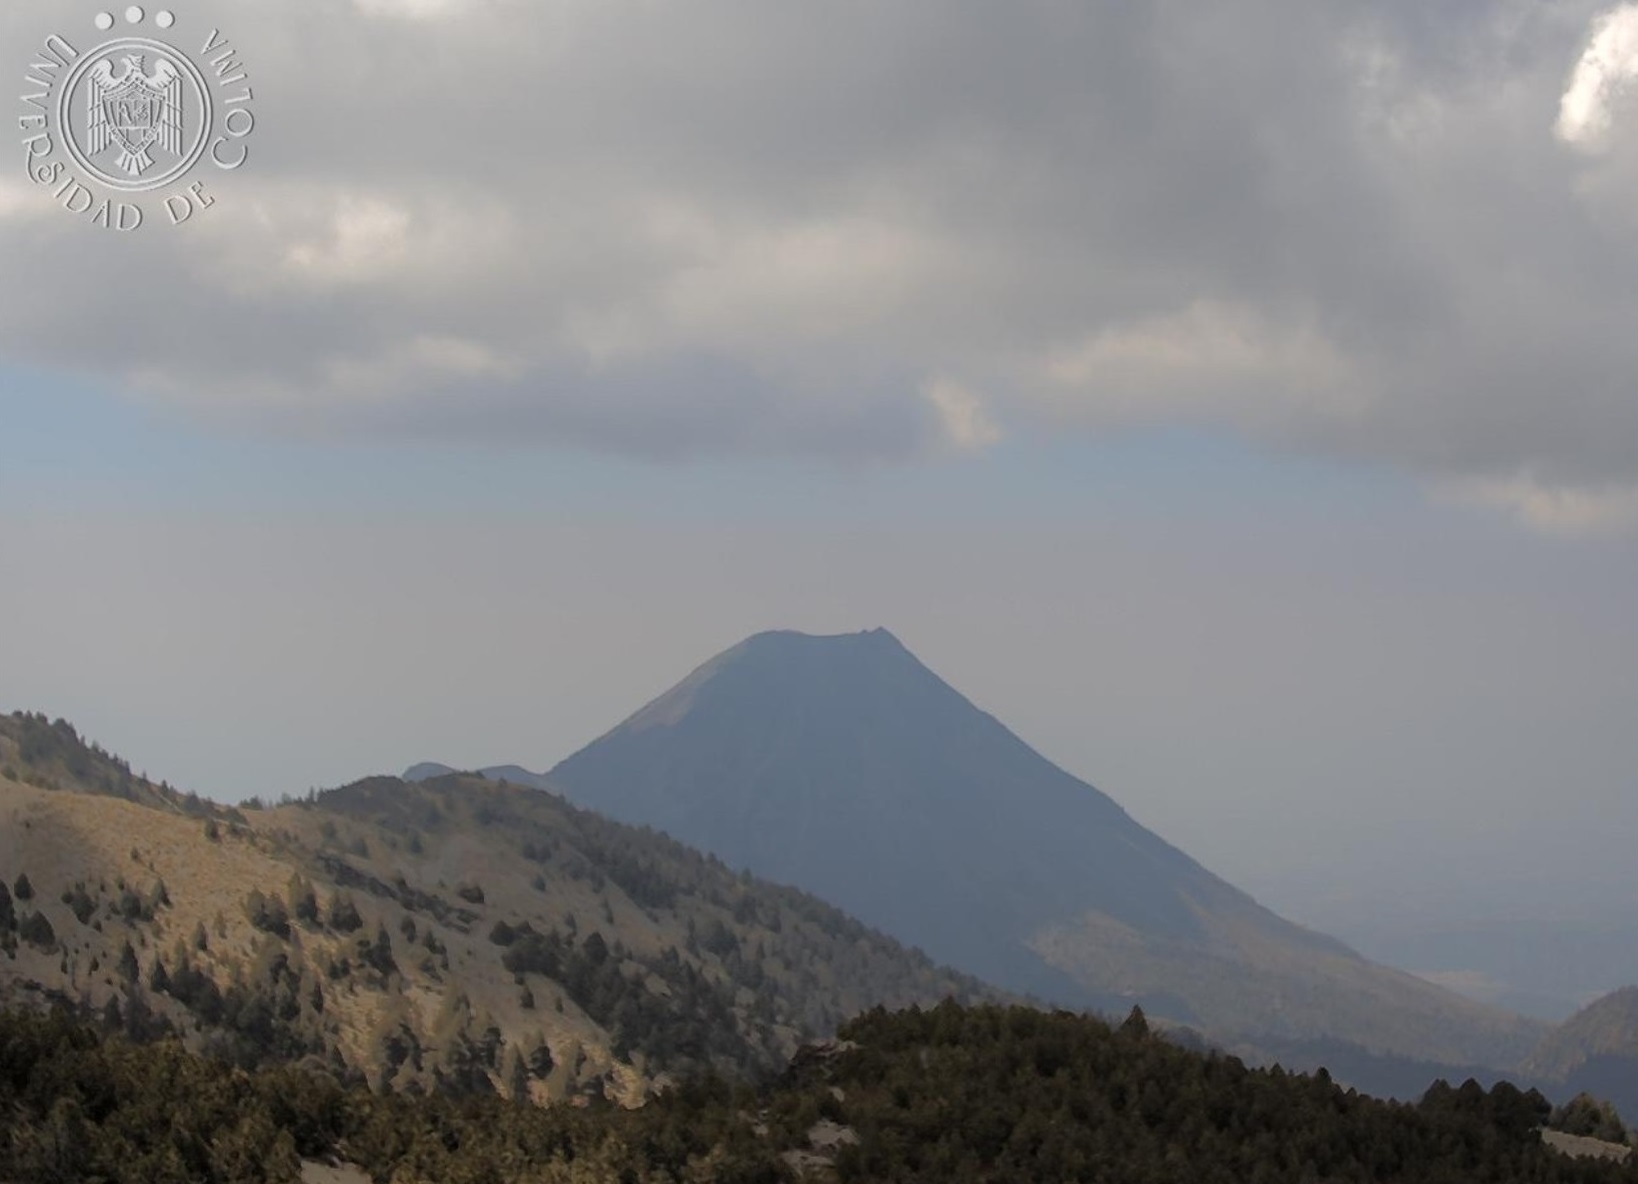 Fotografía del Volcán de Colima. Tomada del Facebook Centro Universitario de Estudios Vulcanológicos- UdeC.